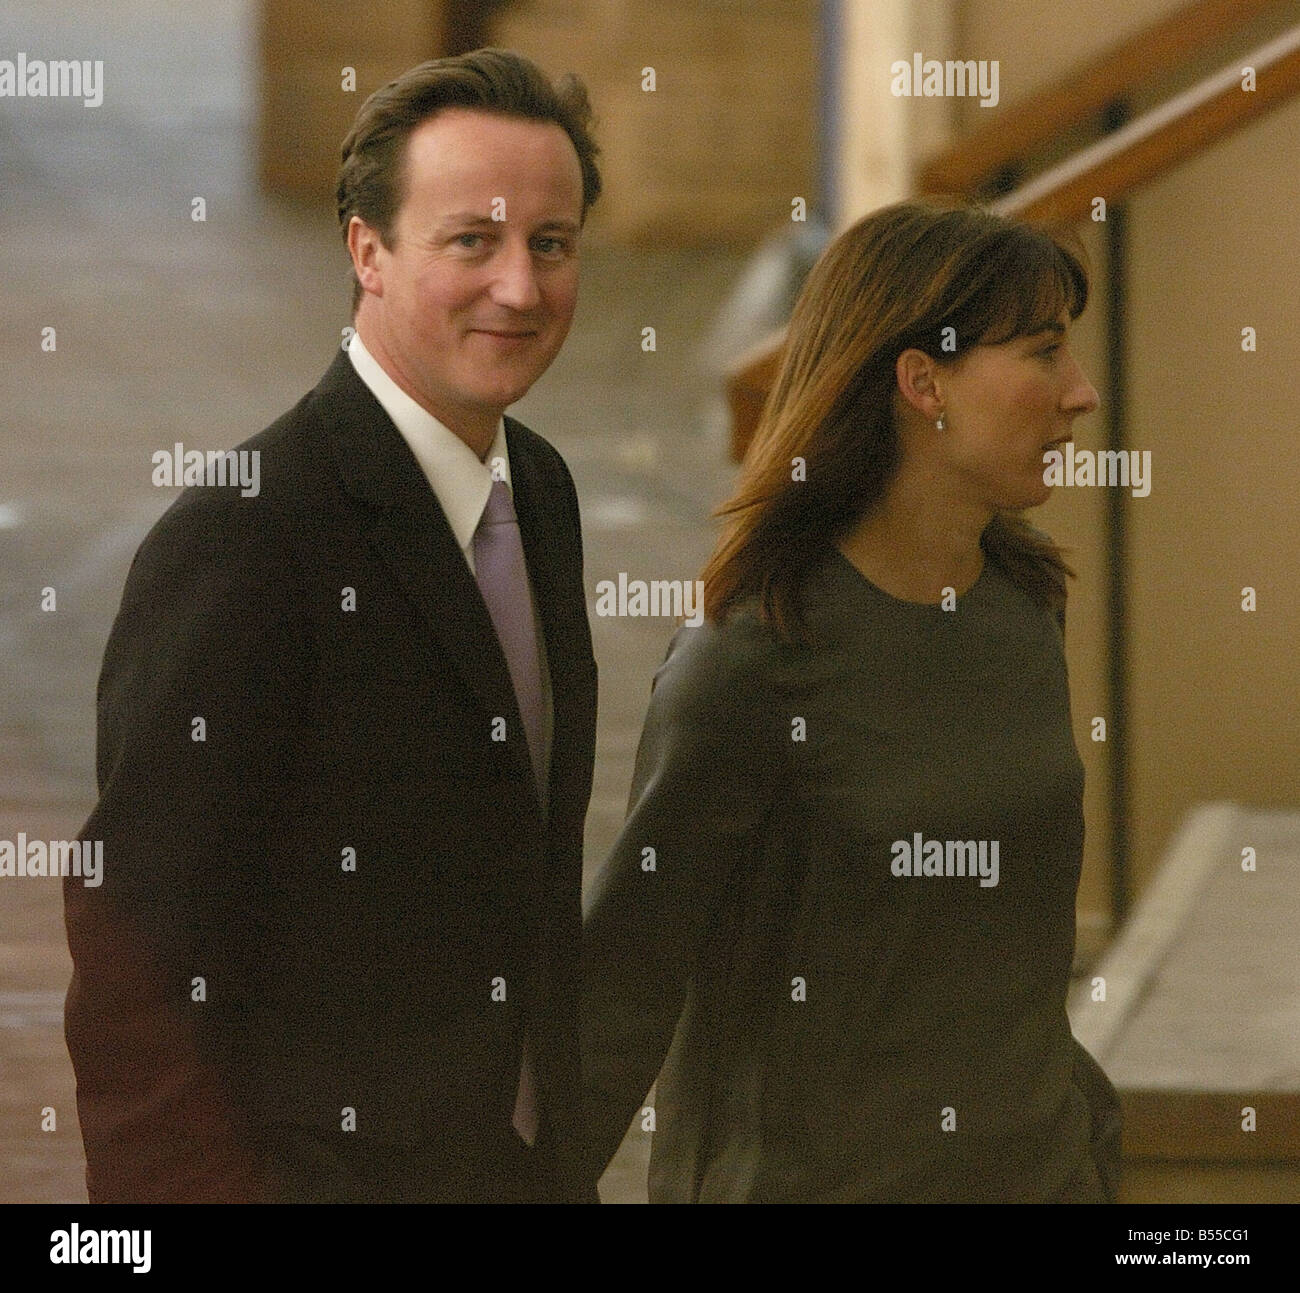 2007 Blackppol Conferencia del Partido Conservador, David Cameron, y su esposa Samantha Cameron llegar a los jardines de invierno Foto de stock